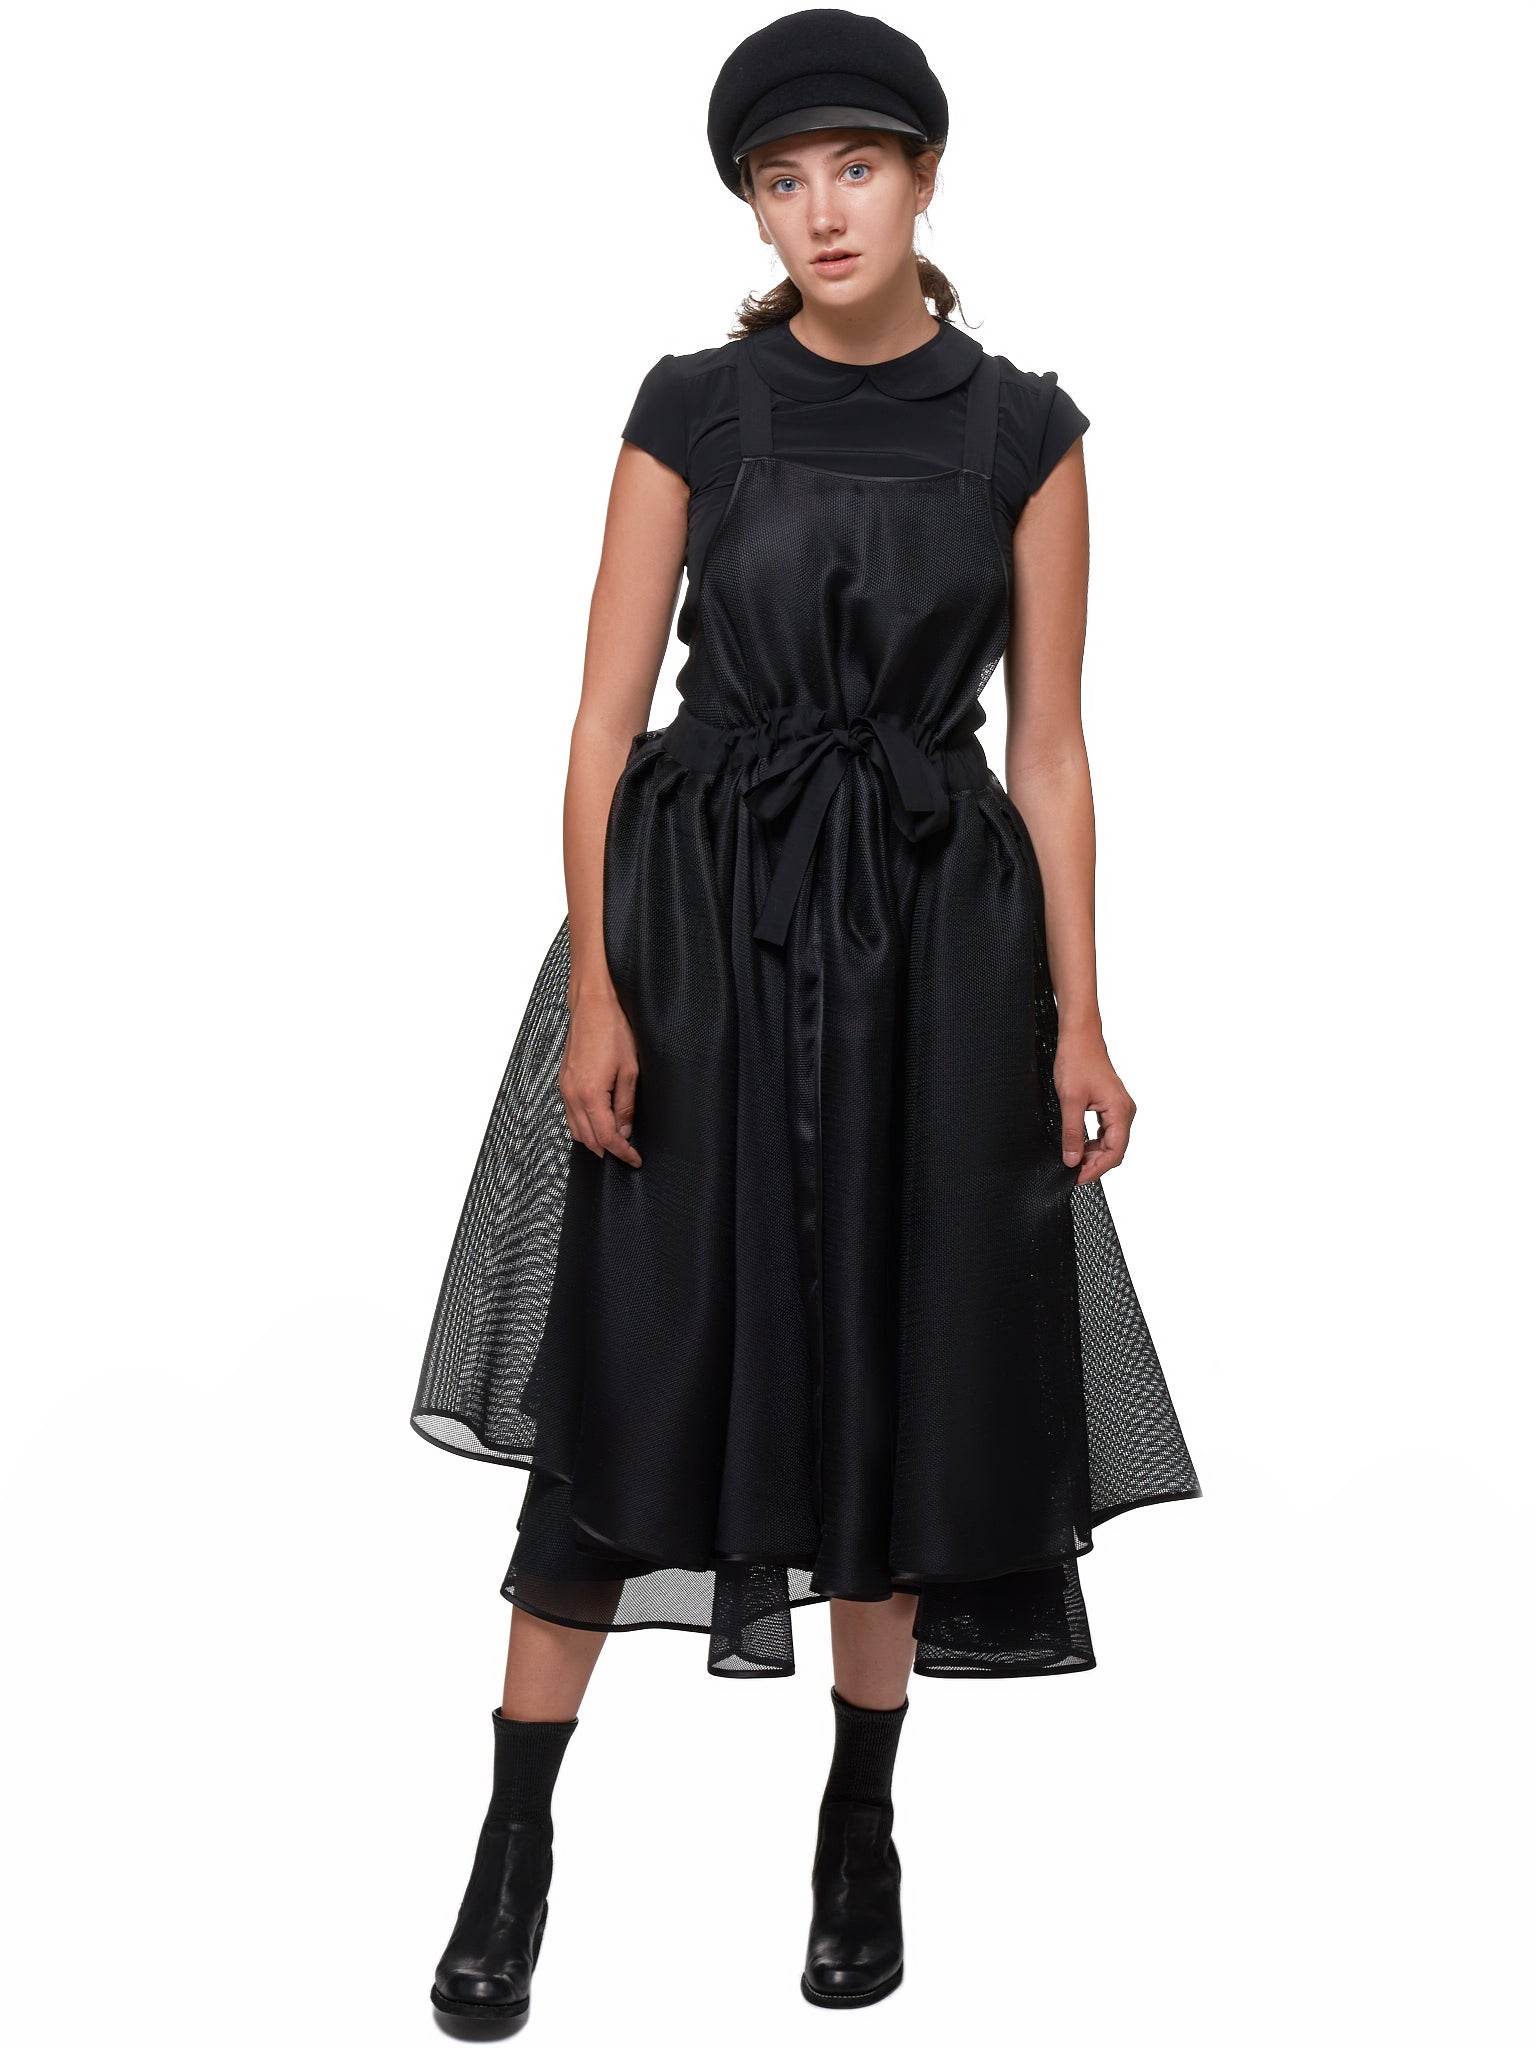 Lena Lumelsky Dress - Hlorenzo Style